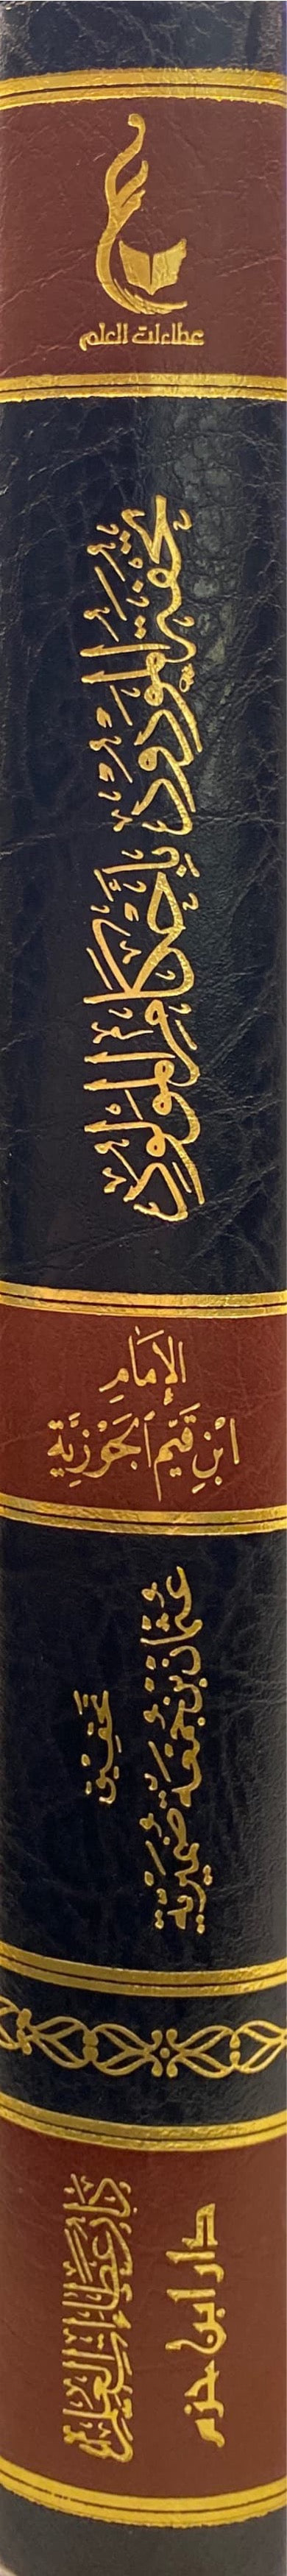 تحفة المولود باحكام المولود   Tuhfatul Mawdud Bi Ahkamil Mawlud (Hazm)